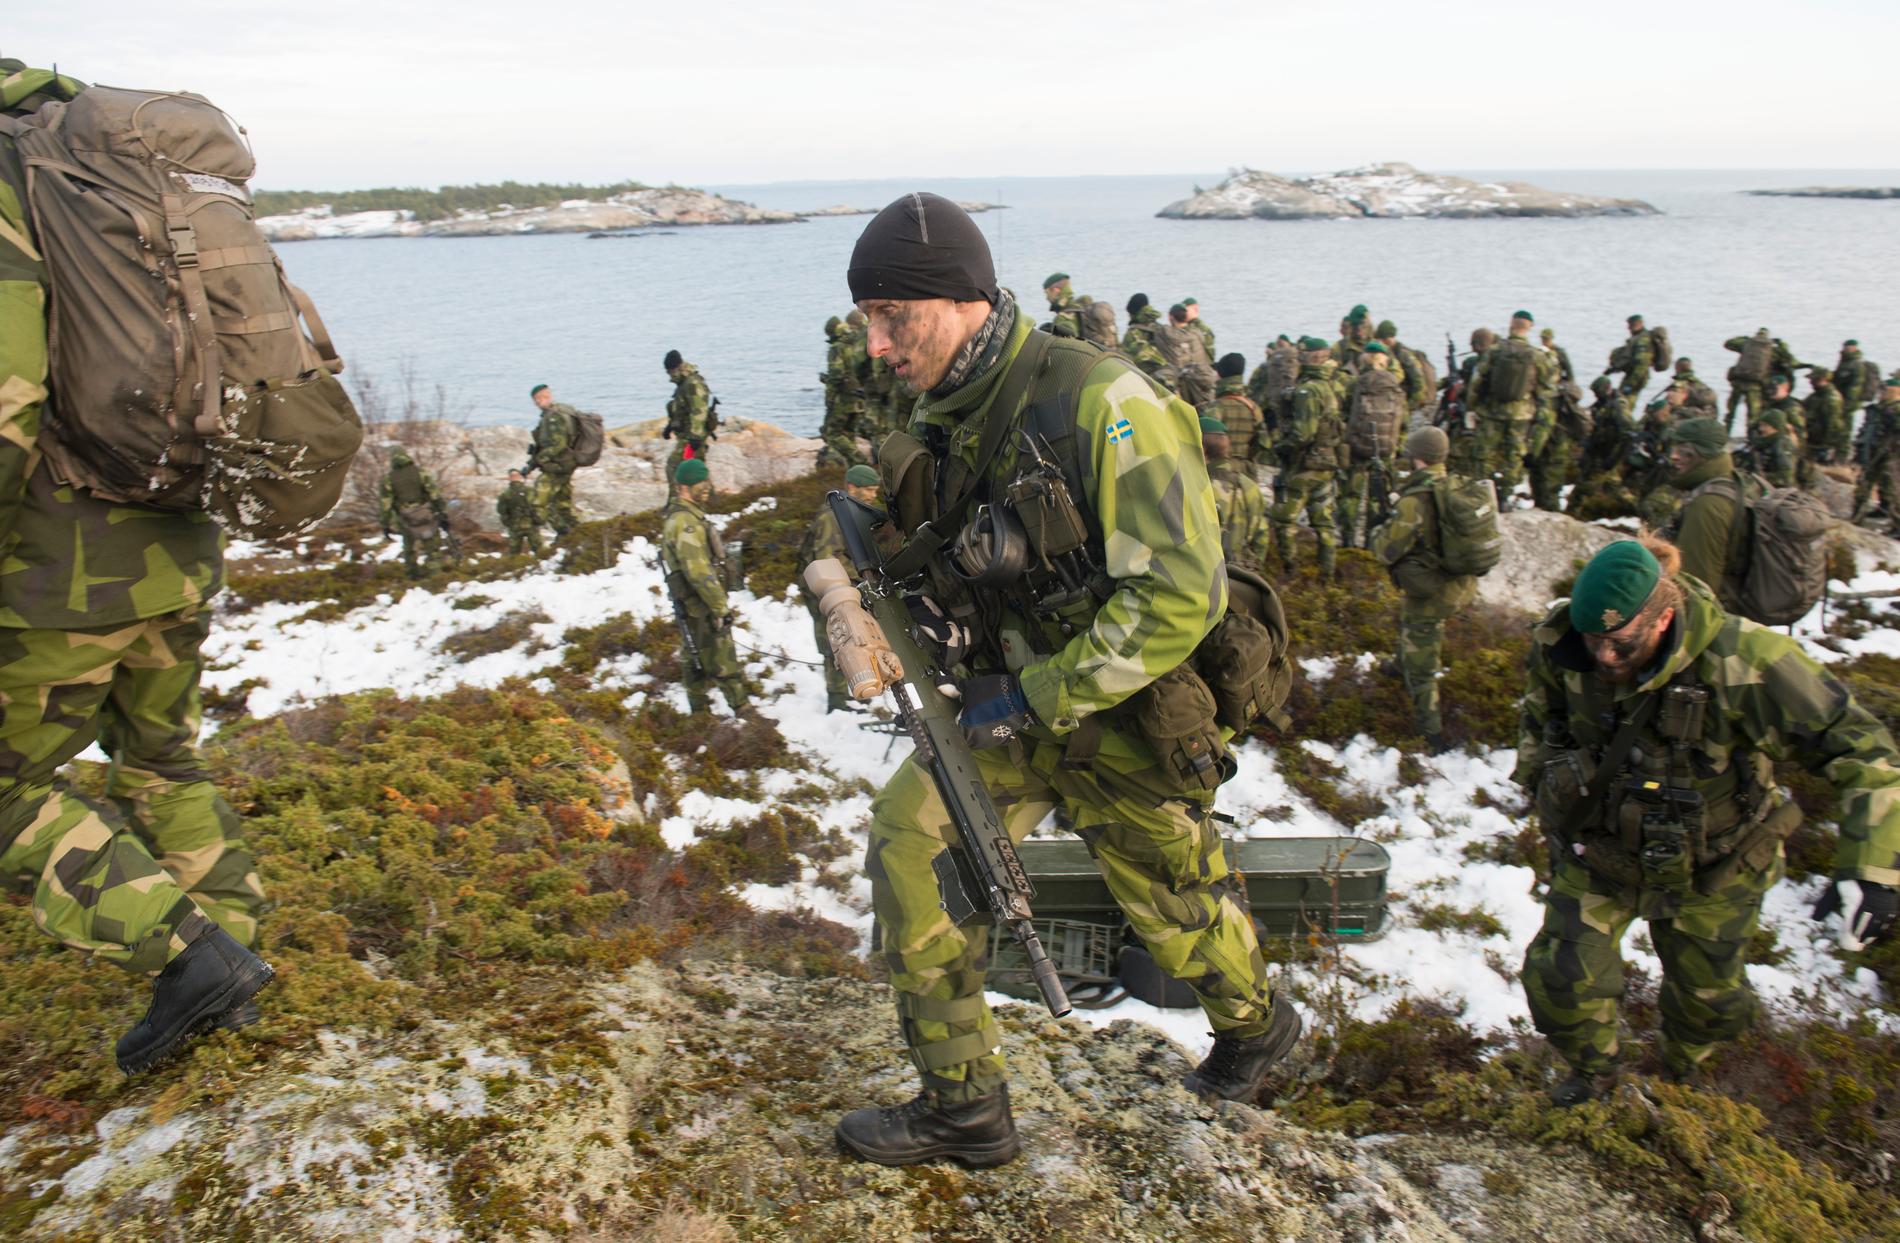 Amfibieskyttekompaniet i Stockholms skärgård under en tio dagar långa marina övningen Swenex, december 2016. Över 1 700 soldater och sjömän ur marinens olika förband deltog i övningen.